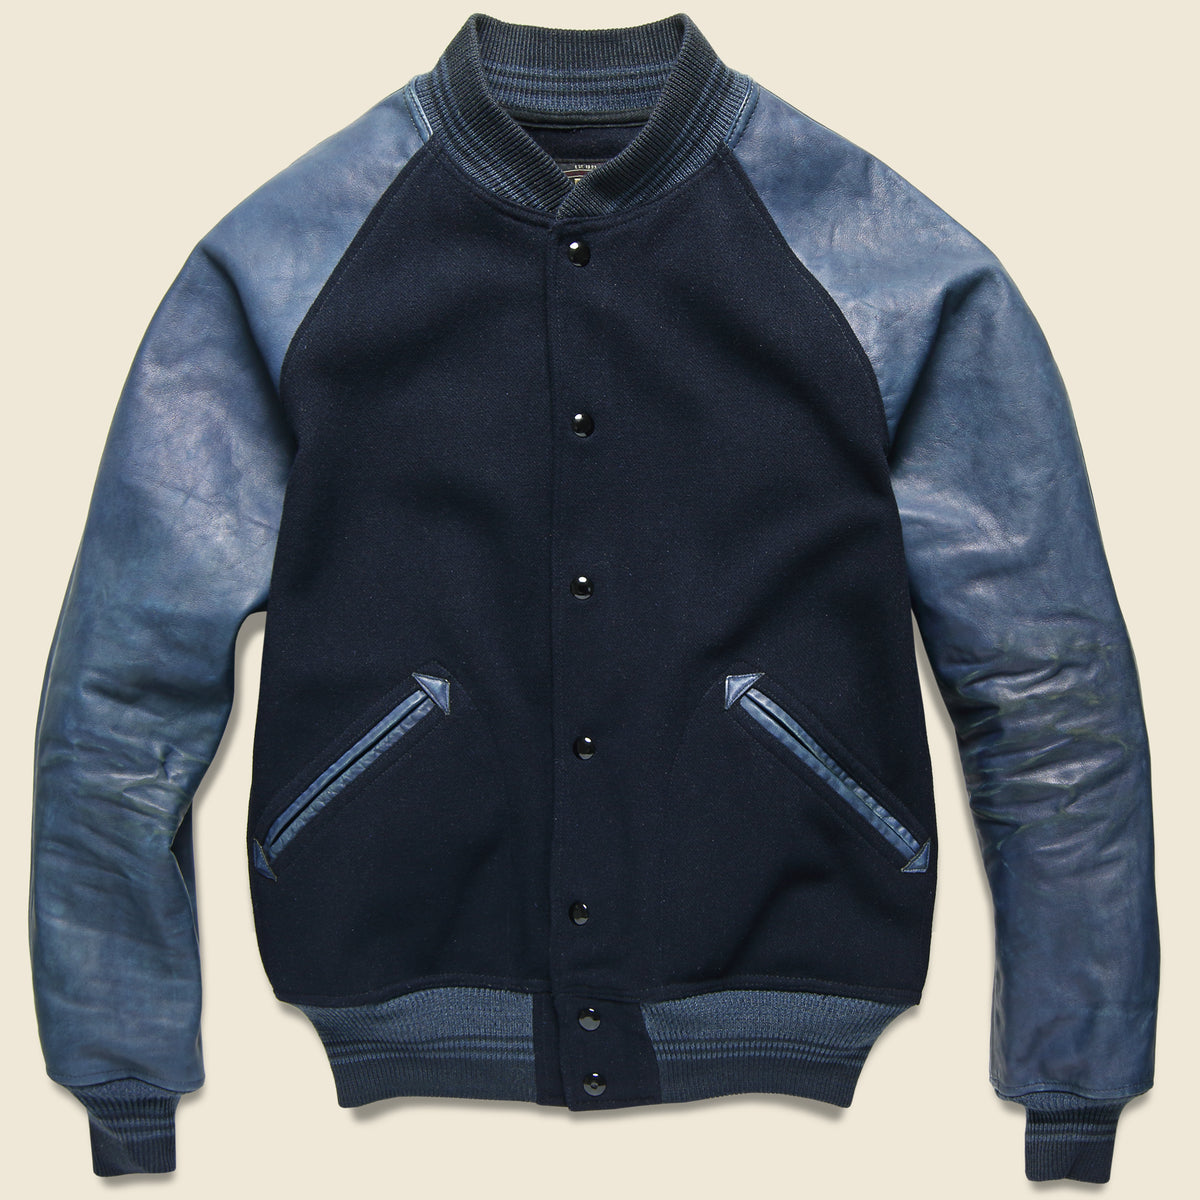 Leather / Wool Watson Jacket - Navy/Indigo